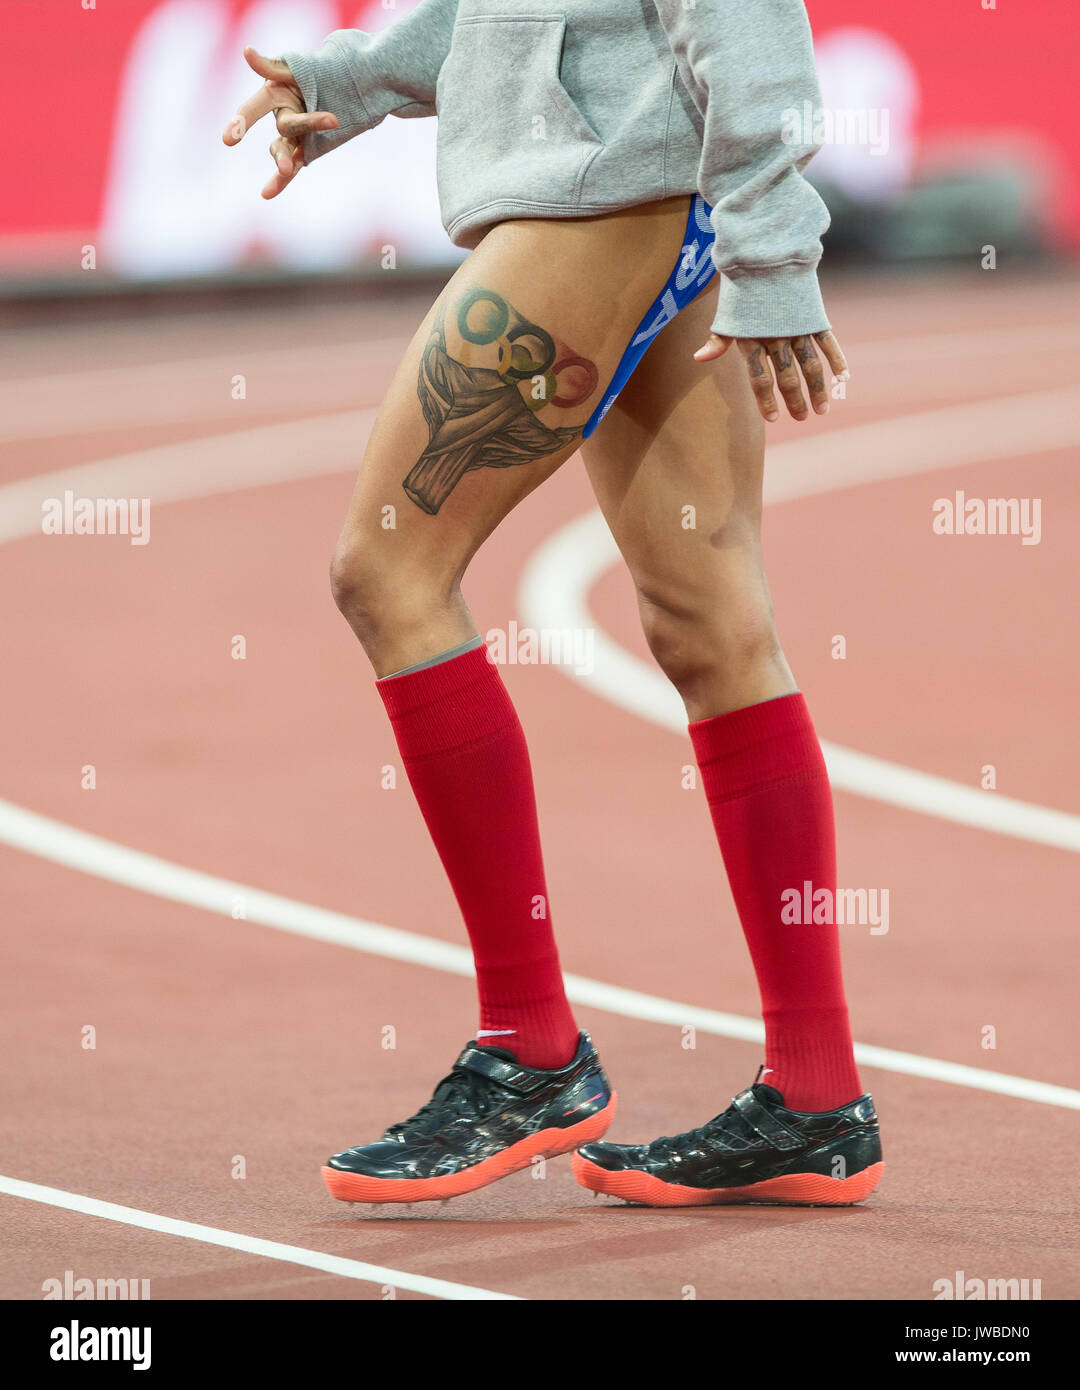 INIKA MCPHERSON de USA leg tattoo pendant le saut en qualifications à l'IAAF Championnats du monde d'athlétisme 2017 - Jour 7 du Parc olympique, Lond Banque D'Images